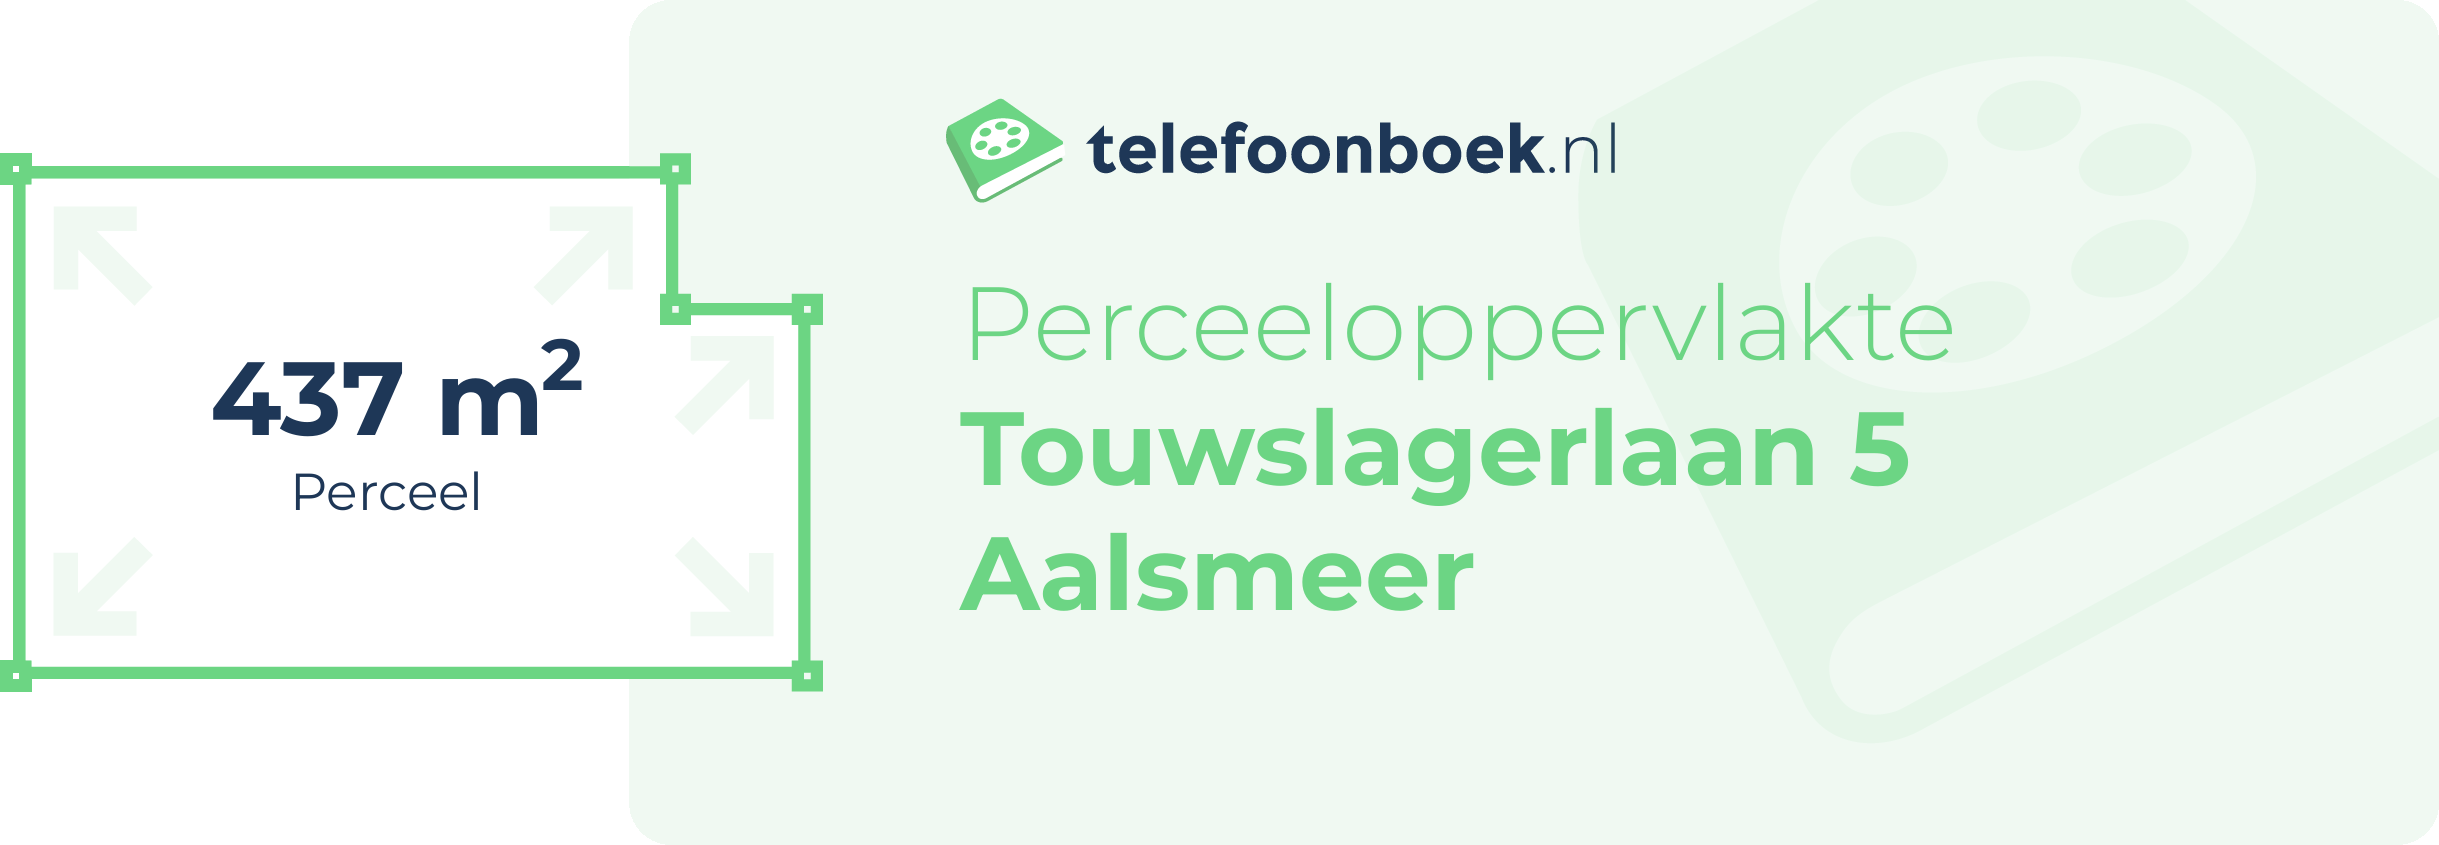 Perceeloppervlakte Touwslagerlaan 5 Aalsmeer